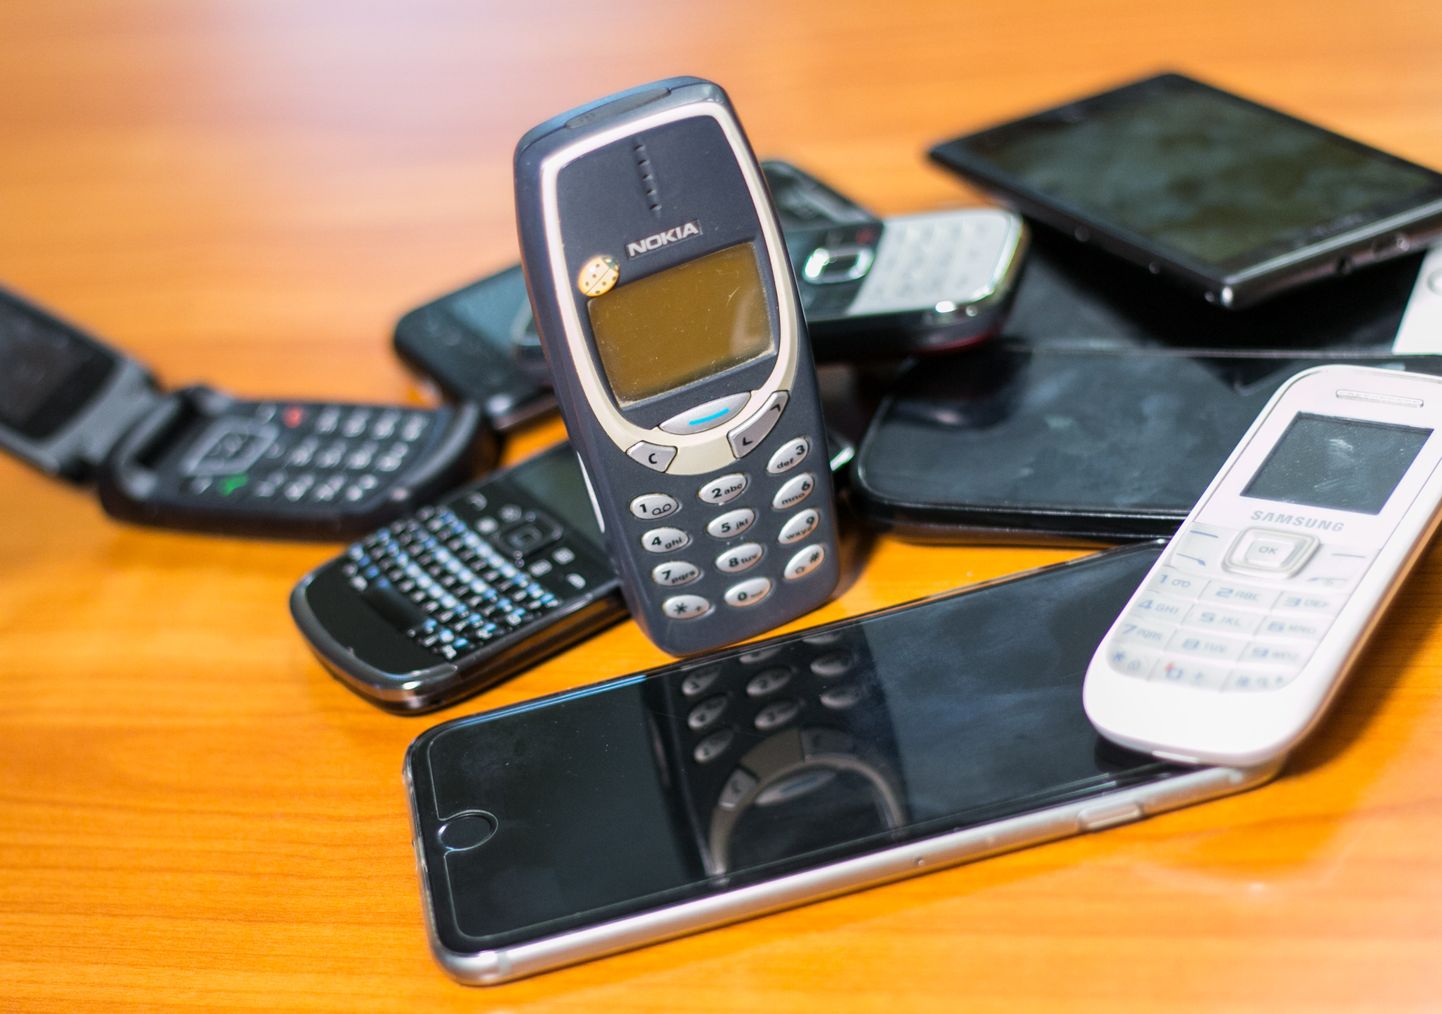 Nutitelefon, telefon, mobiiltelefon
Nuppudega Nokia 3210

Foto: Arvo Meeks/Valgamaalane